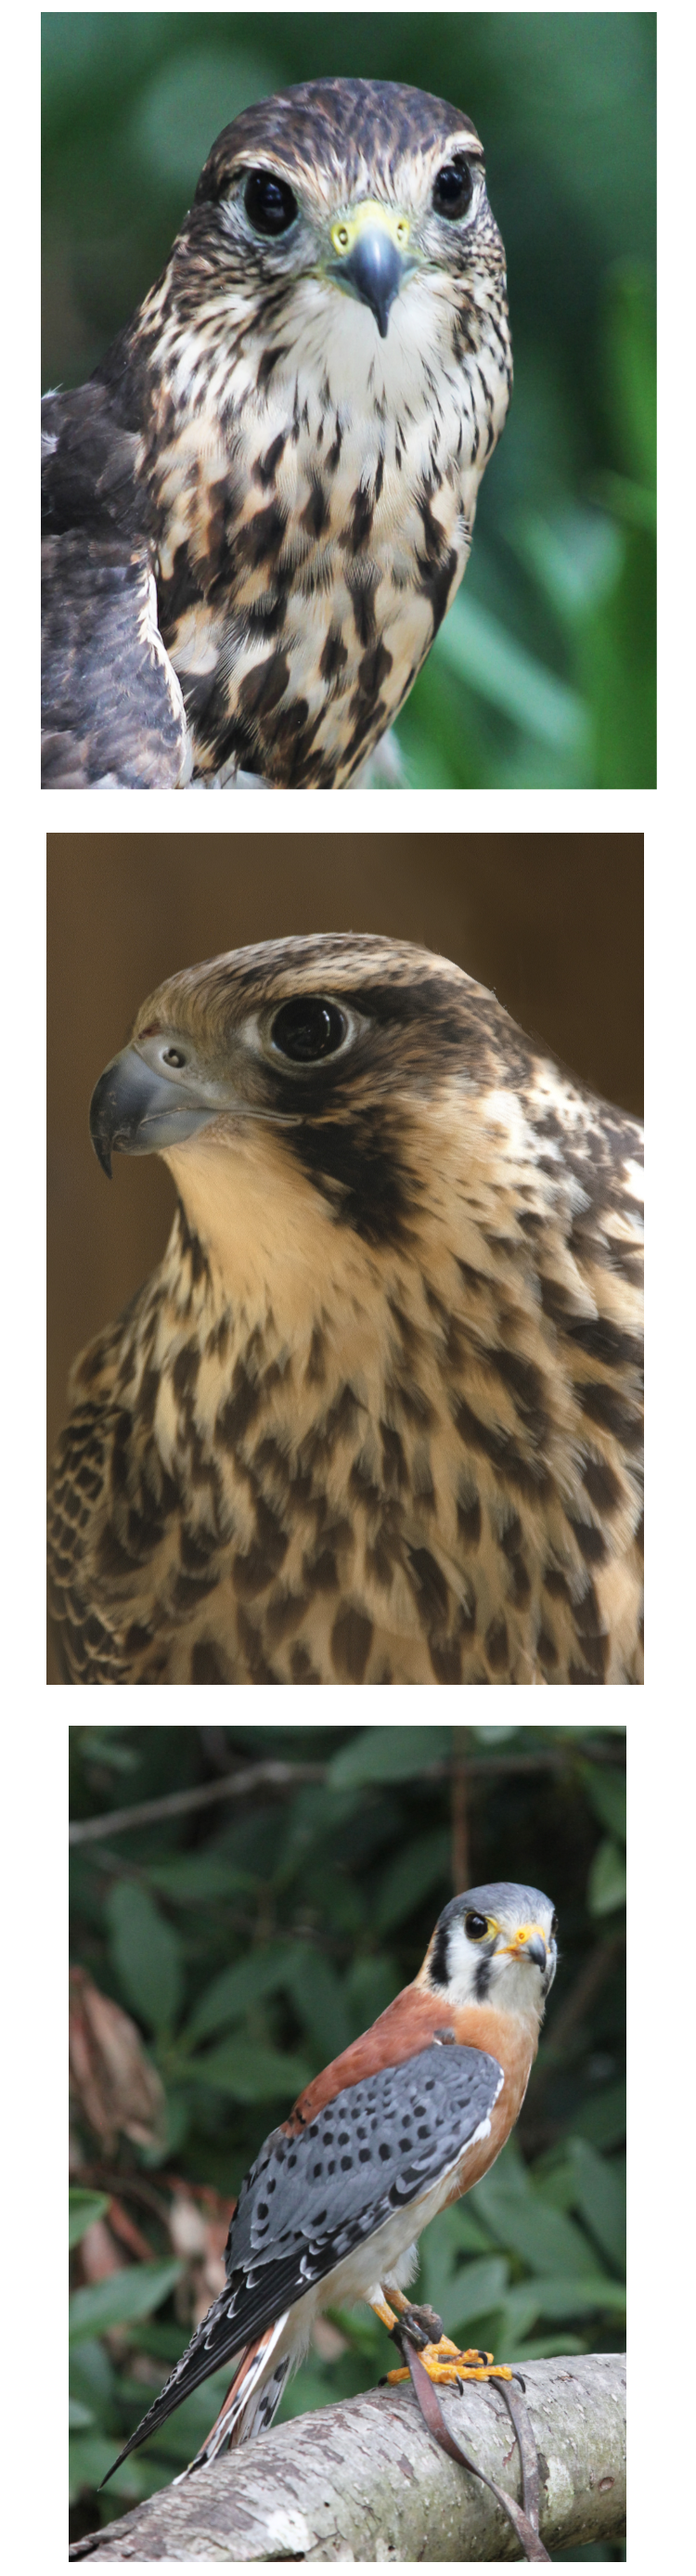 photos of falcons